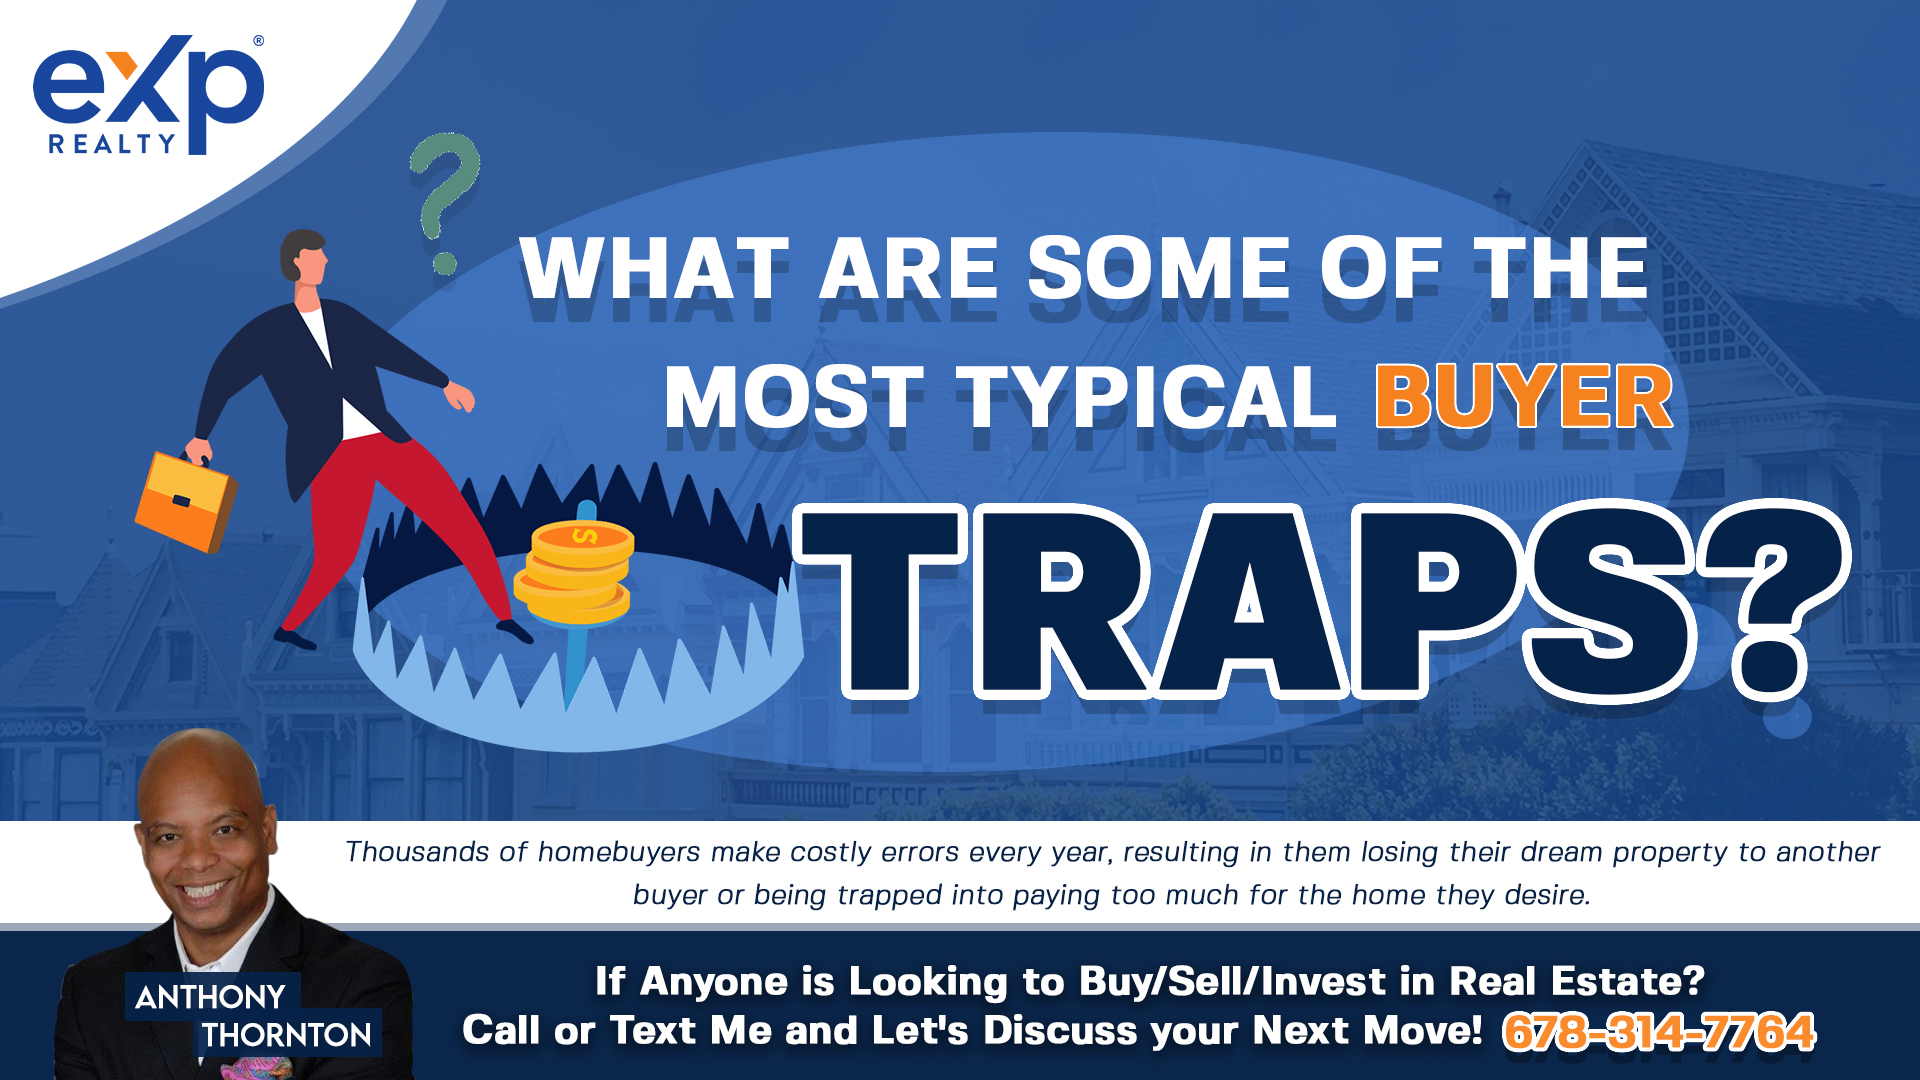 Buyer traps.jpg